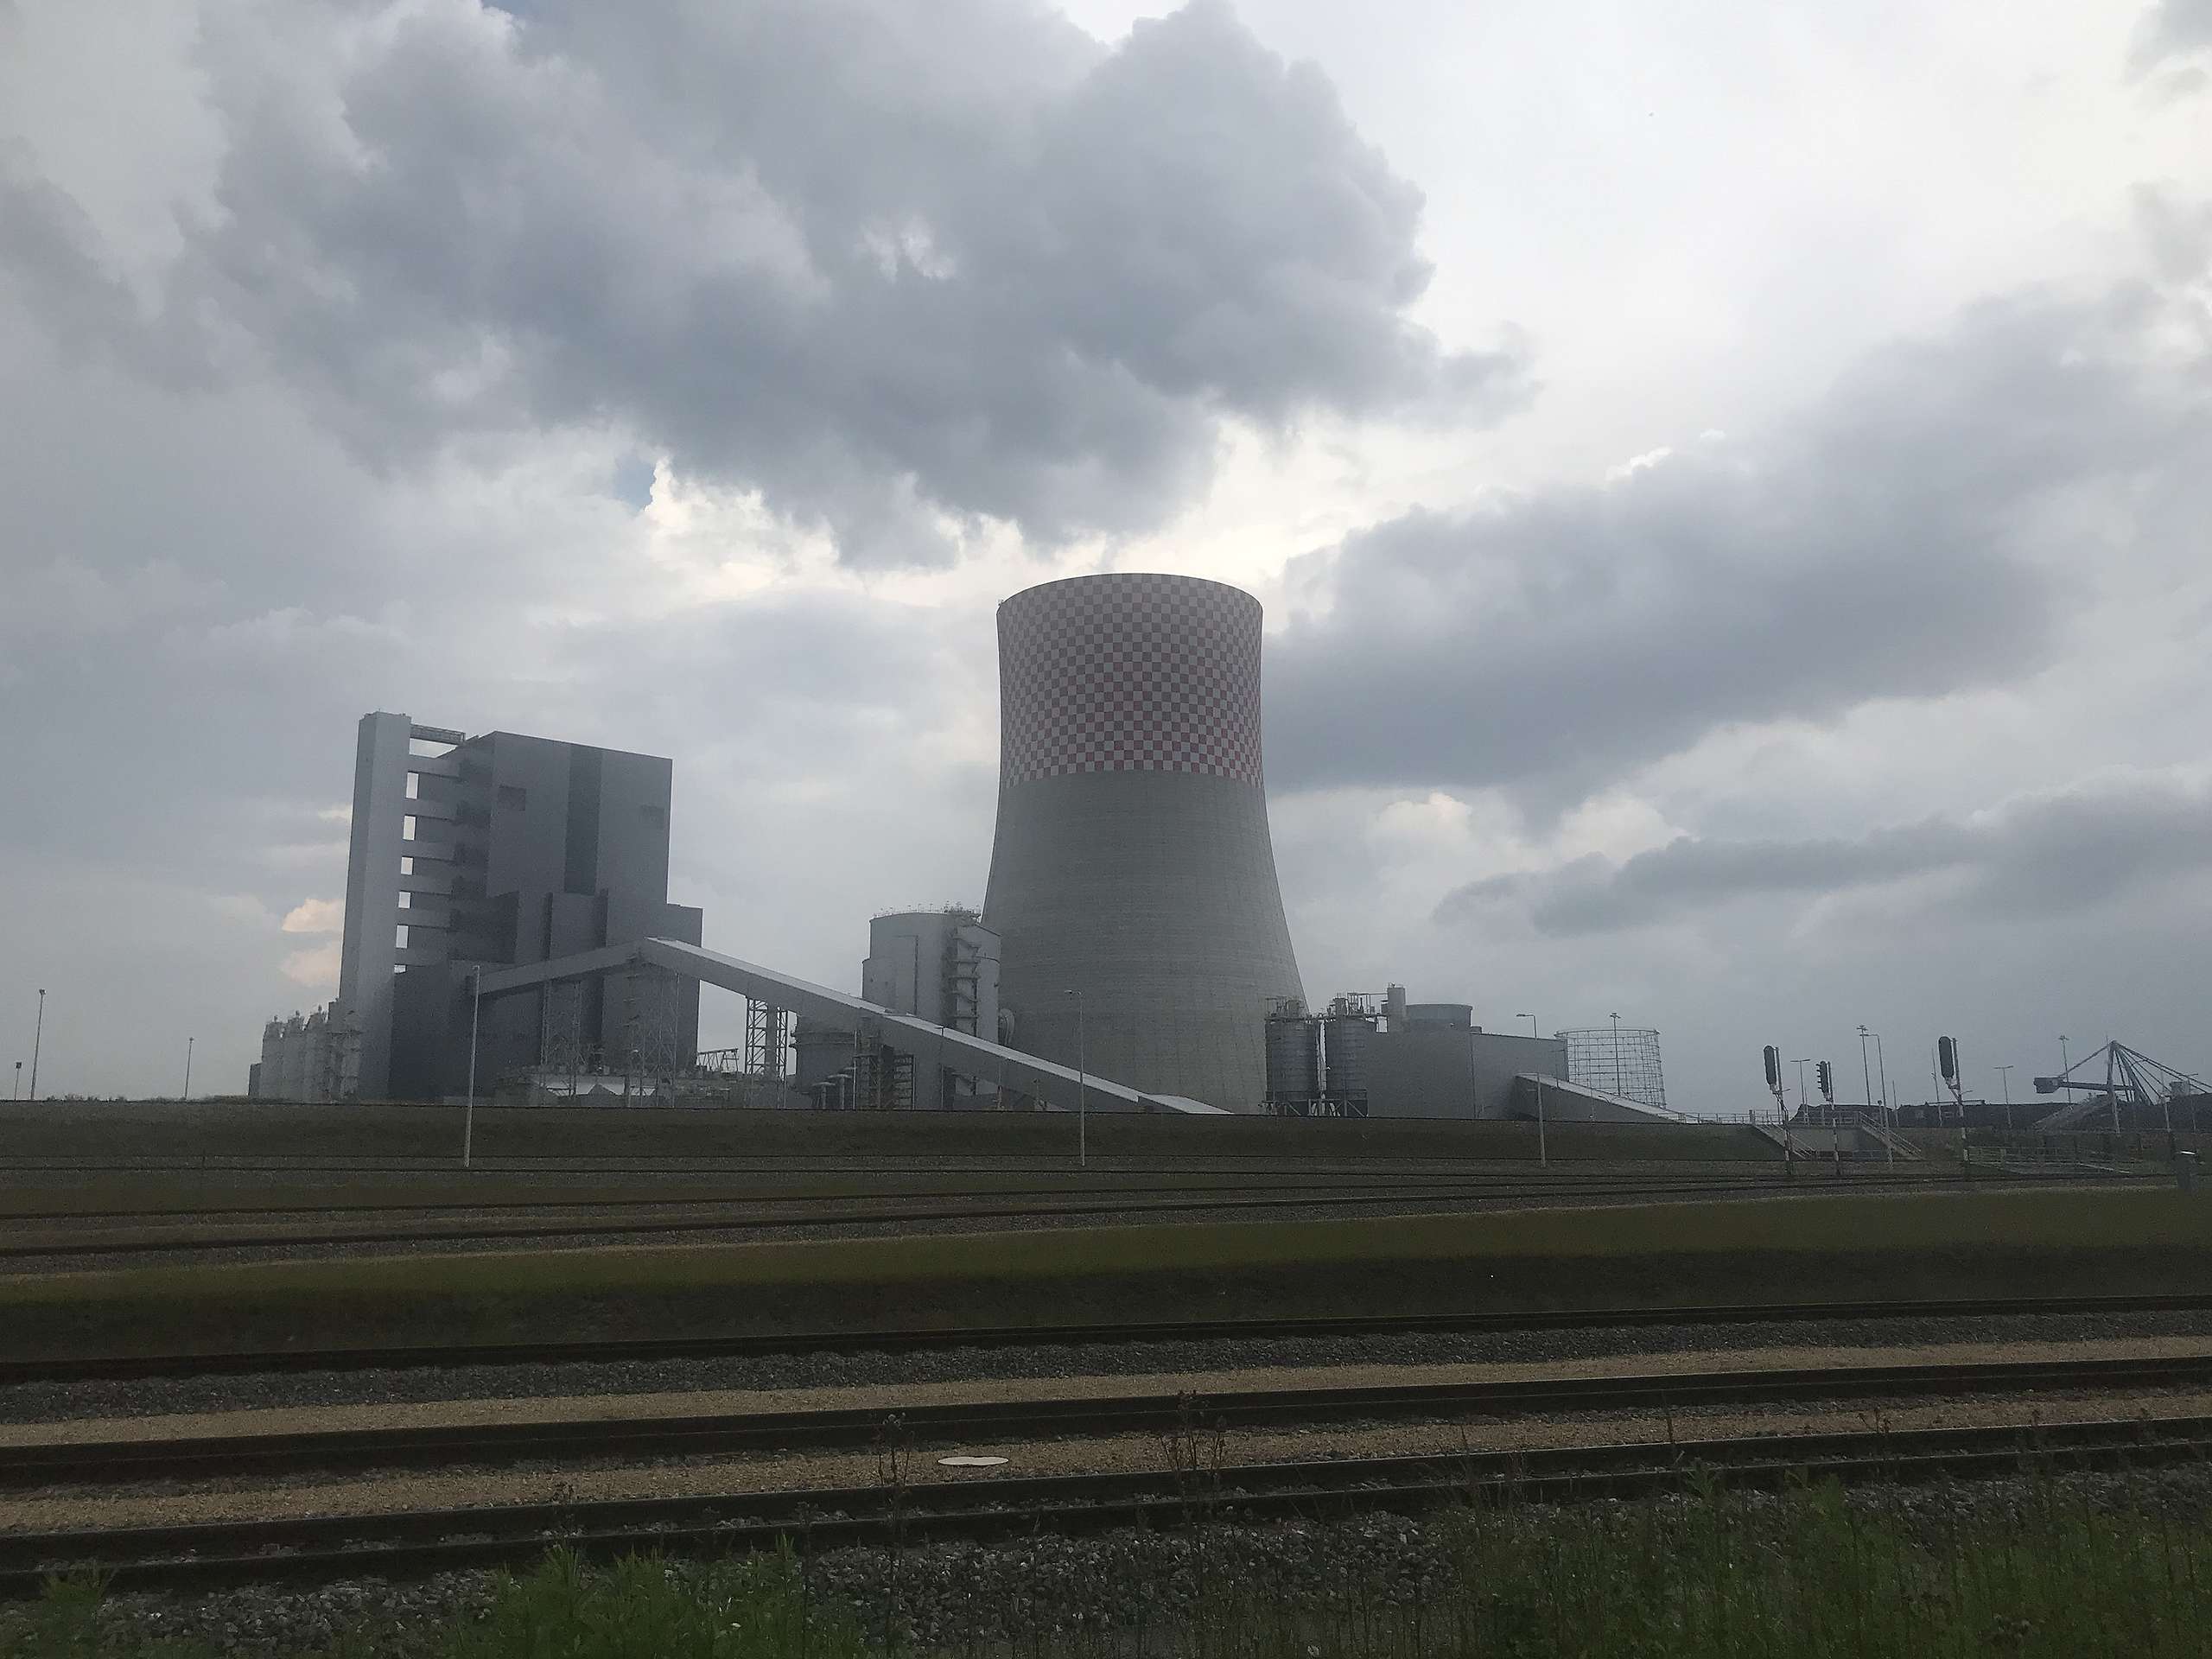 Elektrownia węglowa Jaworzno, nowy blok 910 MW otwarty w 2020 roku.